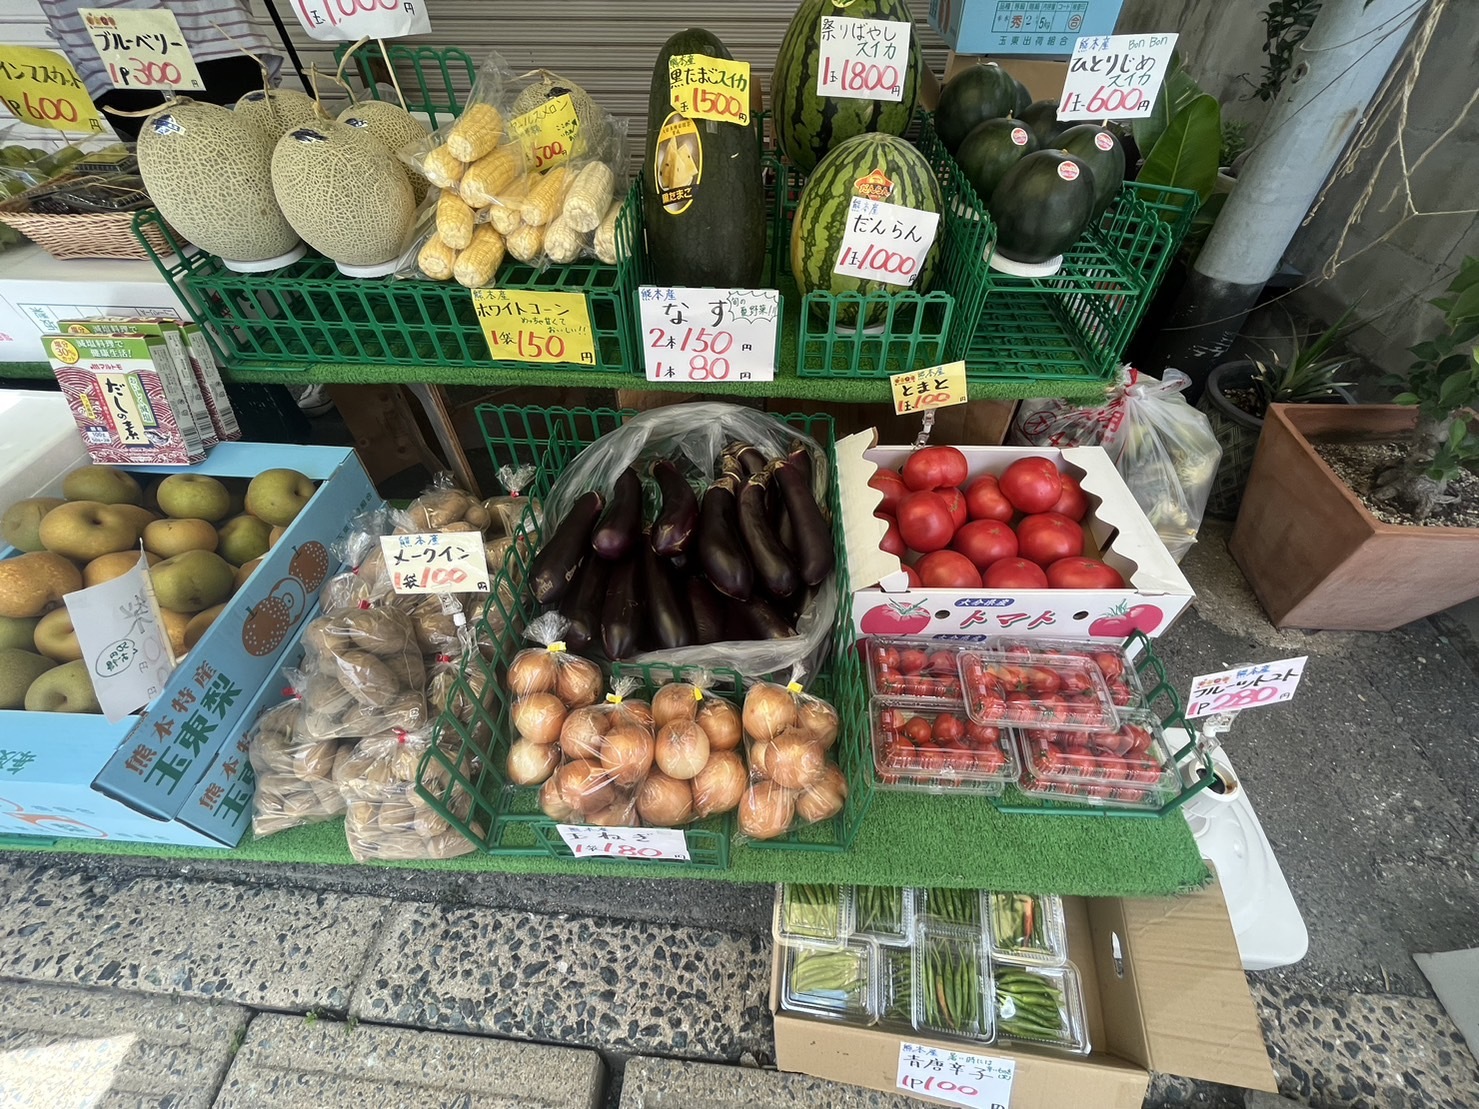 熊本県産の新鮮な野菜やフルーツがたくさん並んでいました